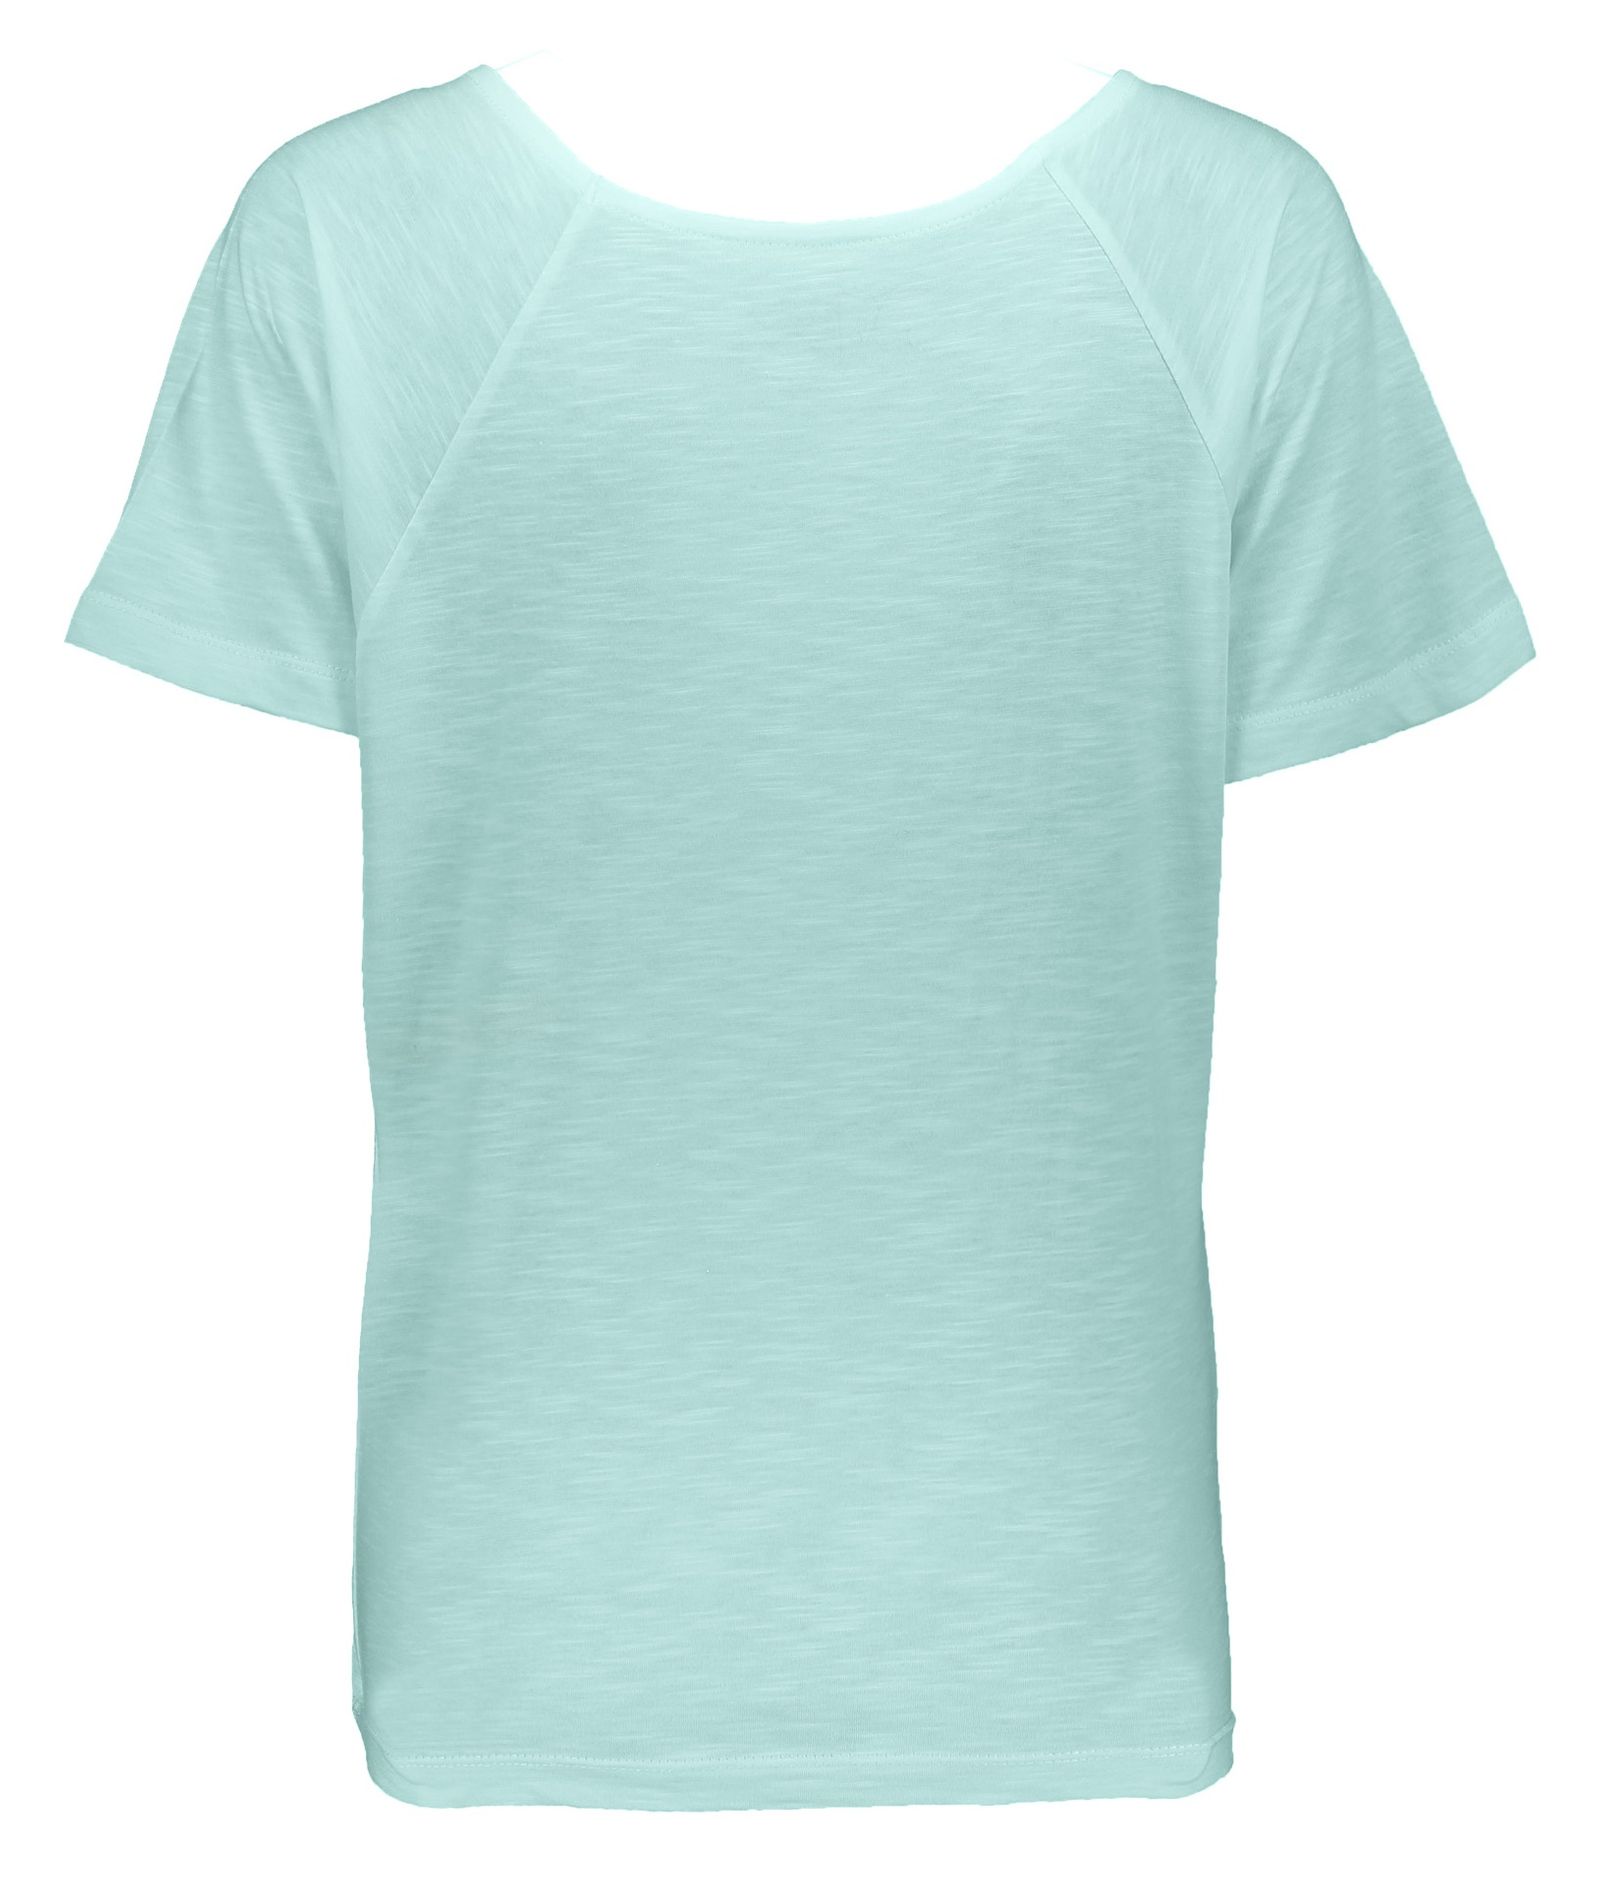 تی شرت زنانه گارودی مدل 1003104023-41 -  - 4